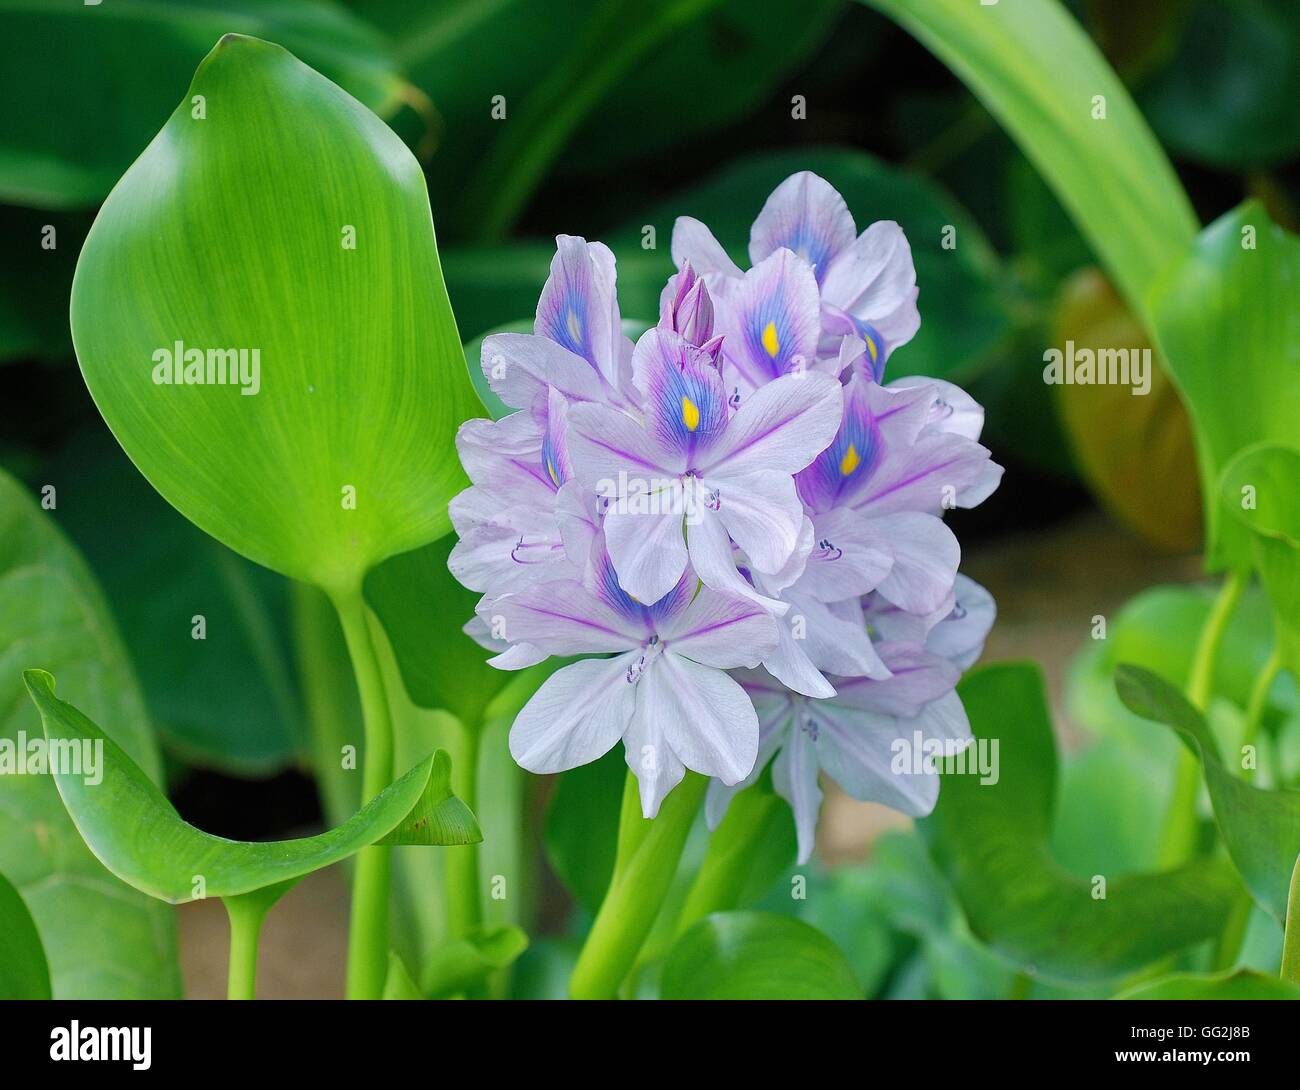 Eichhornia crassipes (Water hyacinth), Pontederiaceae family. Stock Photo